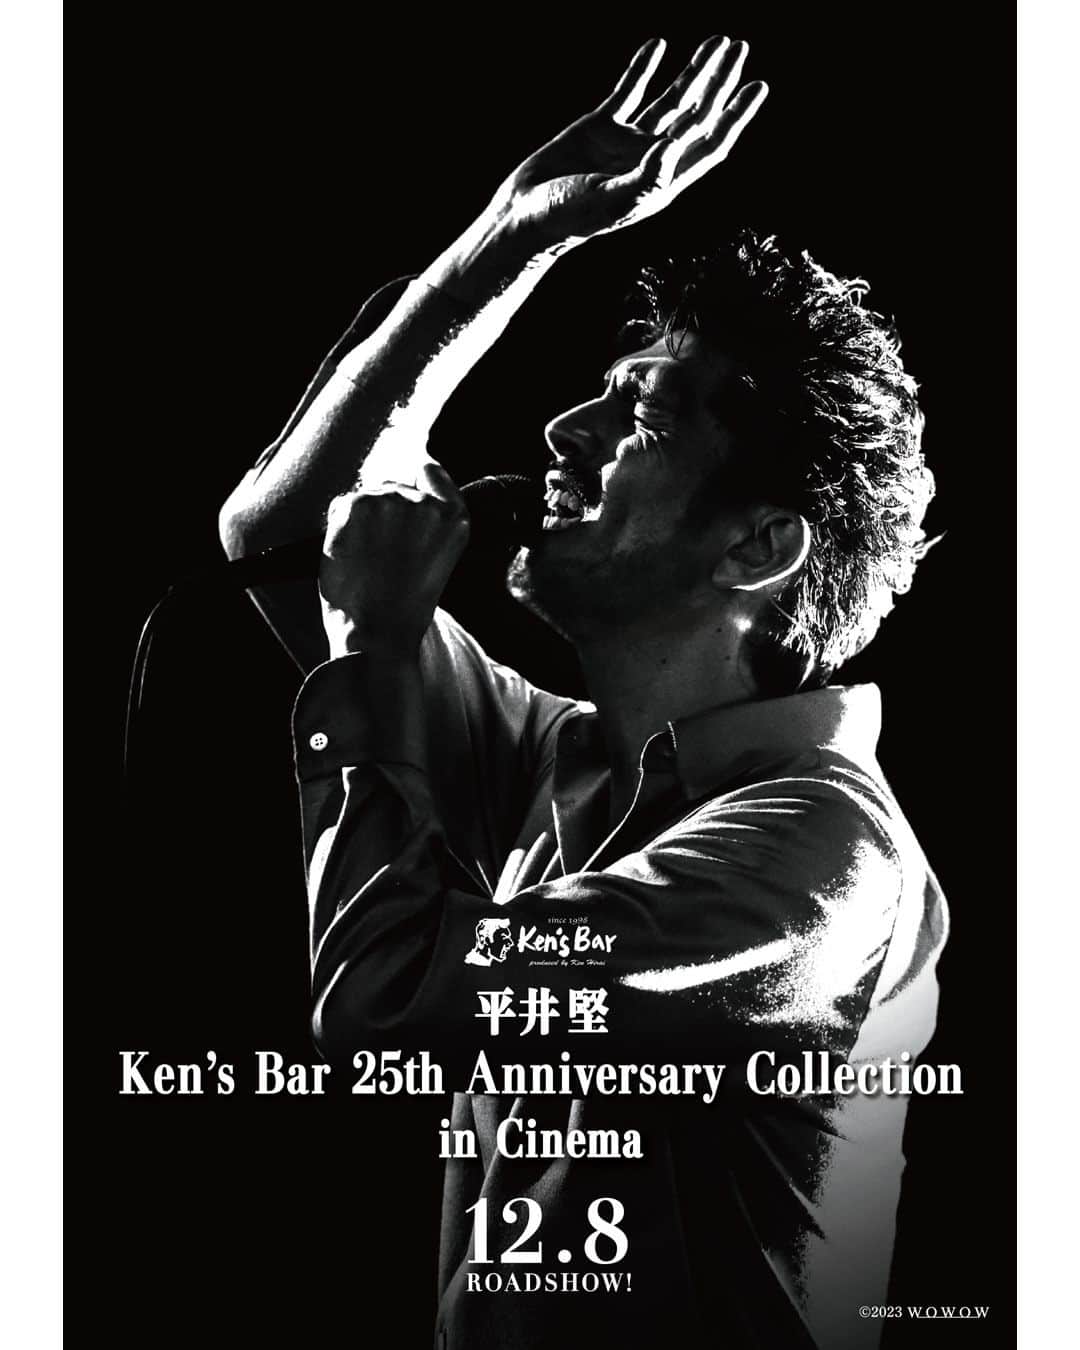 UPLINK film distributionのインスタグラム：「🔻上映決定🔻 『平井堅 Ken's Bar 25th Anniversary Collection in Cinema』アップリンク吉祥寺にて、12月8日（金）～21日（木）【2週間限定上映】＆12月25日（月）【クリスマス上映】🎤🎶🎄 ・・・ Ken’s Bar 開店25周年記念 平井堅の色褪せない名曲や貴重なカバー楽曲のコレクション ・・・ 2023年、25周年を迎えた「Ken’s Bar」。 WOWOWでこれまで放送・配信してきた全19公演から、平井堅本人が厳選した楽曲たちを劇場でお届けする。 通常のライブとは異なるアコースティックアレンジのオリジナル曲はもちろん、魅力あふれるカバーまで。 今では視聴するのが難しい貴重な初期の映像から、オンラインで実施した最近の映像まで一気にお楽しみいただける。 Ken’s Barを見守ってきたファンは平井堅とともに過ごしたその時々のご自身の思いを重ねて、最近平井堅ファンになった方はKen’s Barの歴史をまとめて振り返ることができることだろう。 バーに見立てた会場で、シックな照明のもと、平井堅の甘く美しい歌声が染み渡る。 「Ken’s Bar」の25年の歴史をまとめて体験できる劇場空間。 今年のクリスマスは映画館で、平井堅の遊び心が散りばめられた、大人のムード漂う「Ken’s Bar」へご来店あれ。  https://joji.uplink.co.jp/movie/2023/19770  #平井堅　#Ken'sBar　#ライブ　#アップリンク吉祥寺」